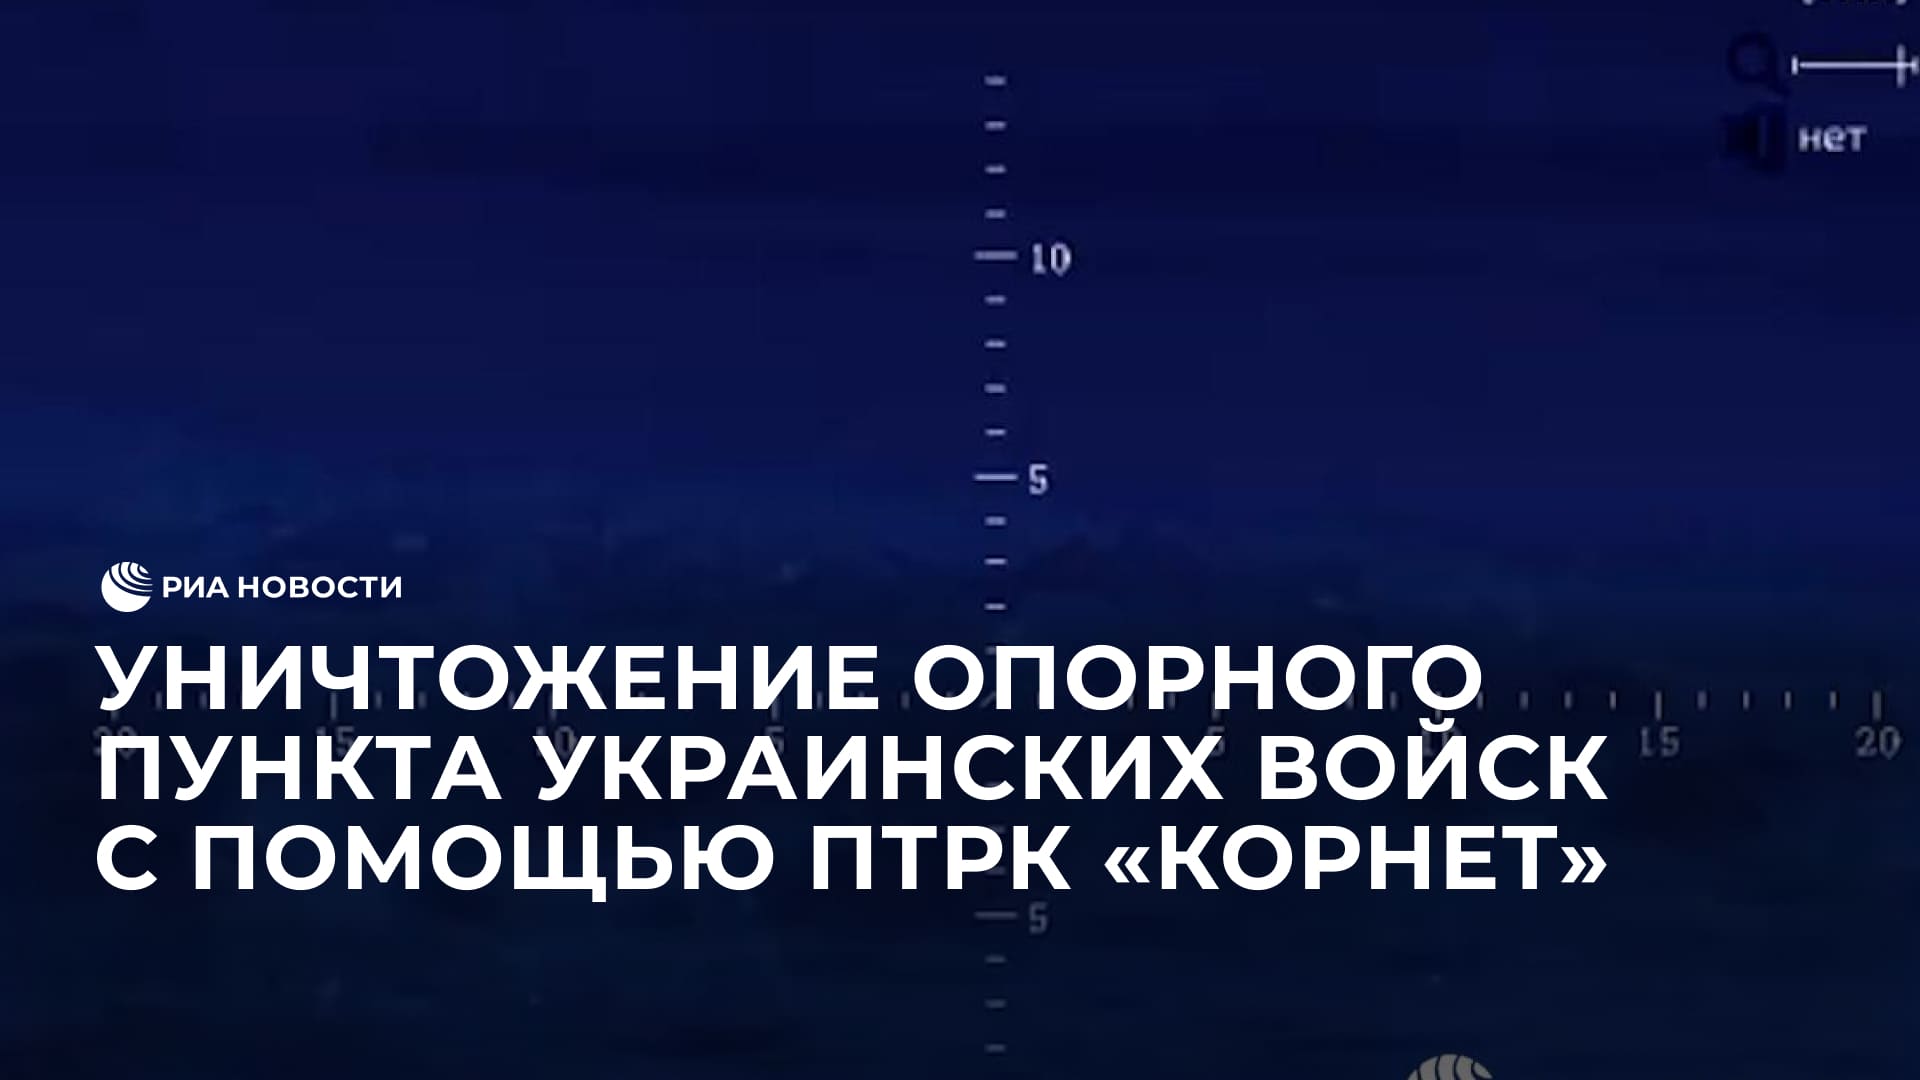 Уничтожение опорного пункта украинских войск с помощью ПТРК "Корнет"